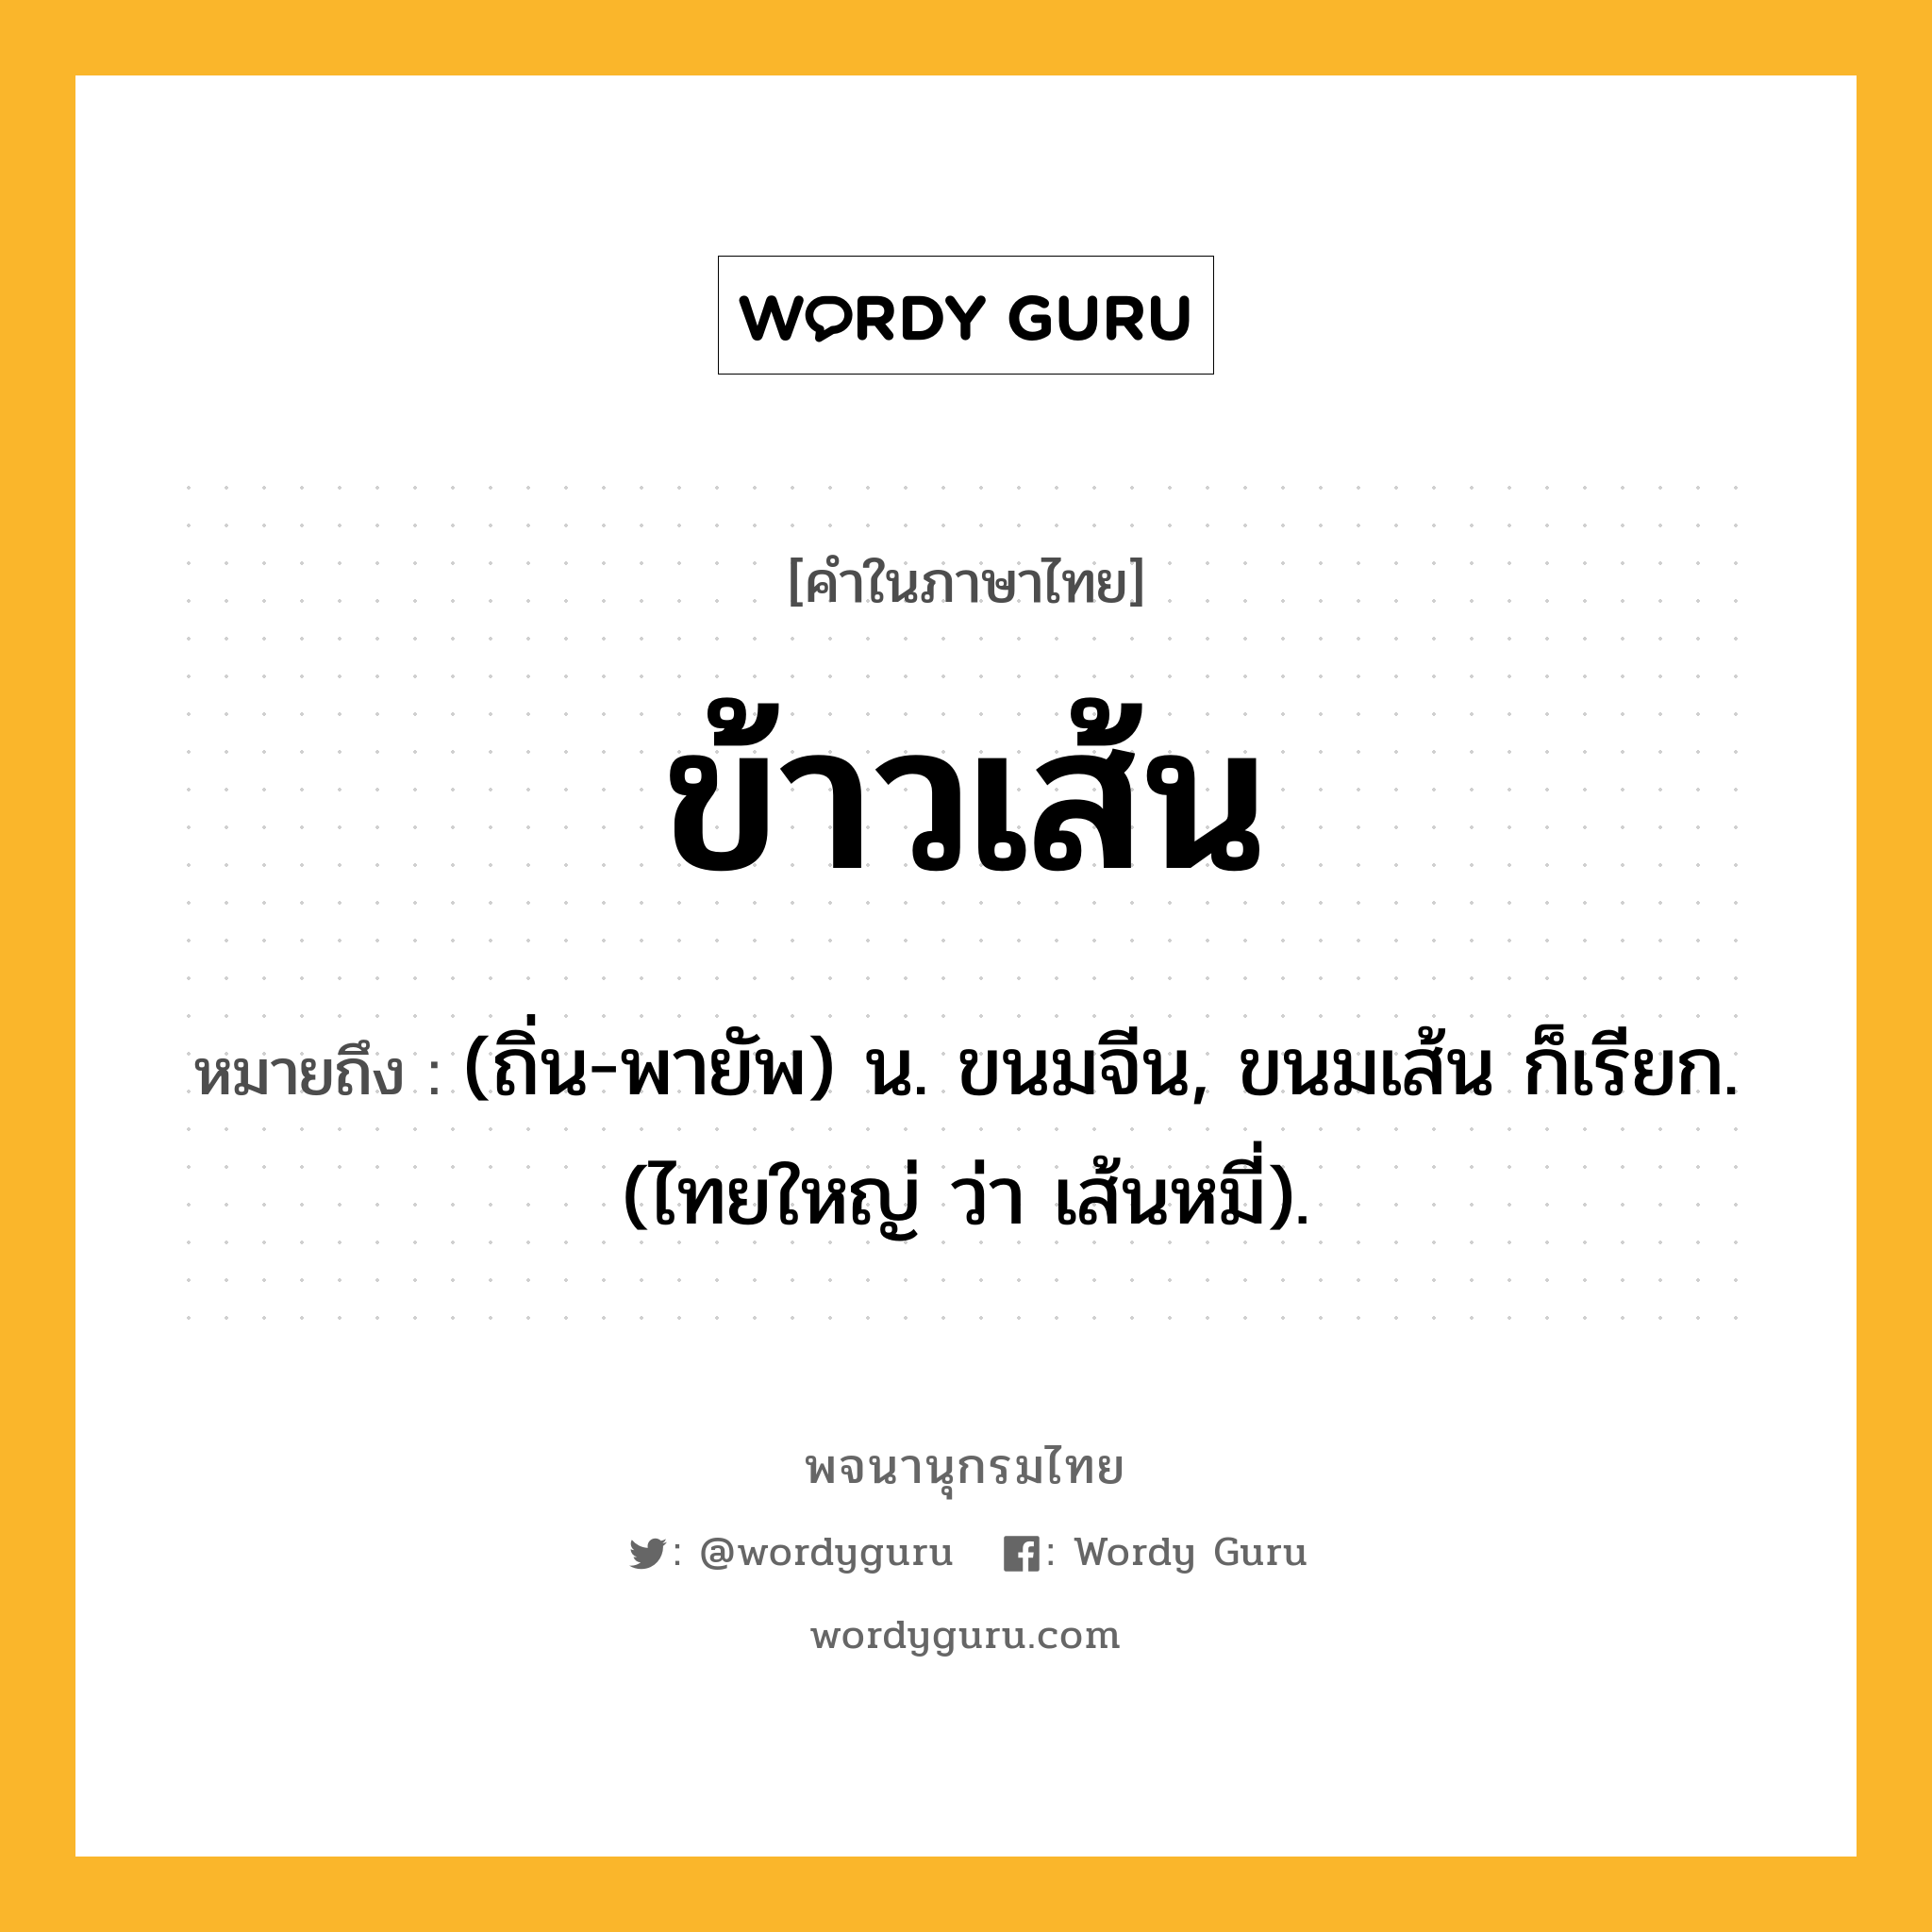 ข้าวเส้น หมายถึงอะไร?, คำในภาษาไทย ข้าวเส้น หมายถึง (ถิ่น-พายัพ) น. ขนมจีน, ขนมเส้น ก็เรียก. (ไทยใหญ่ ว่า เส้นหมี่).